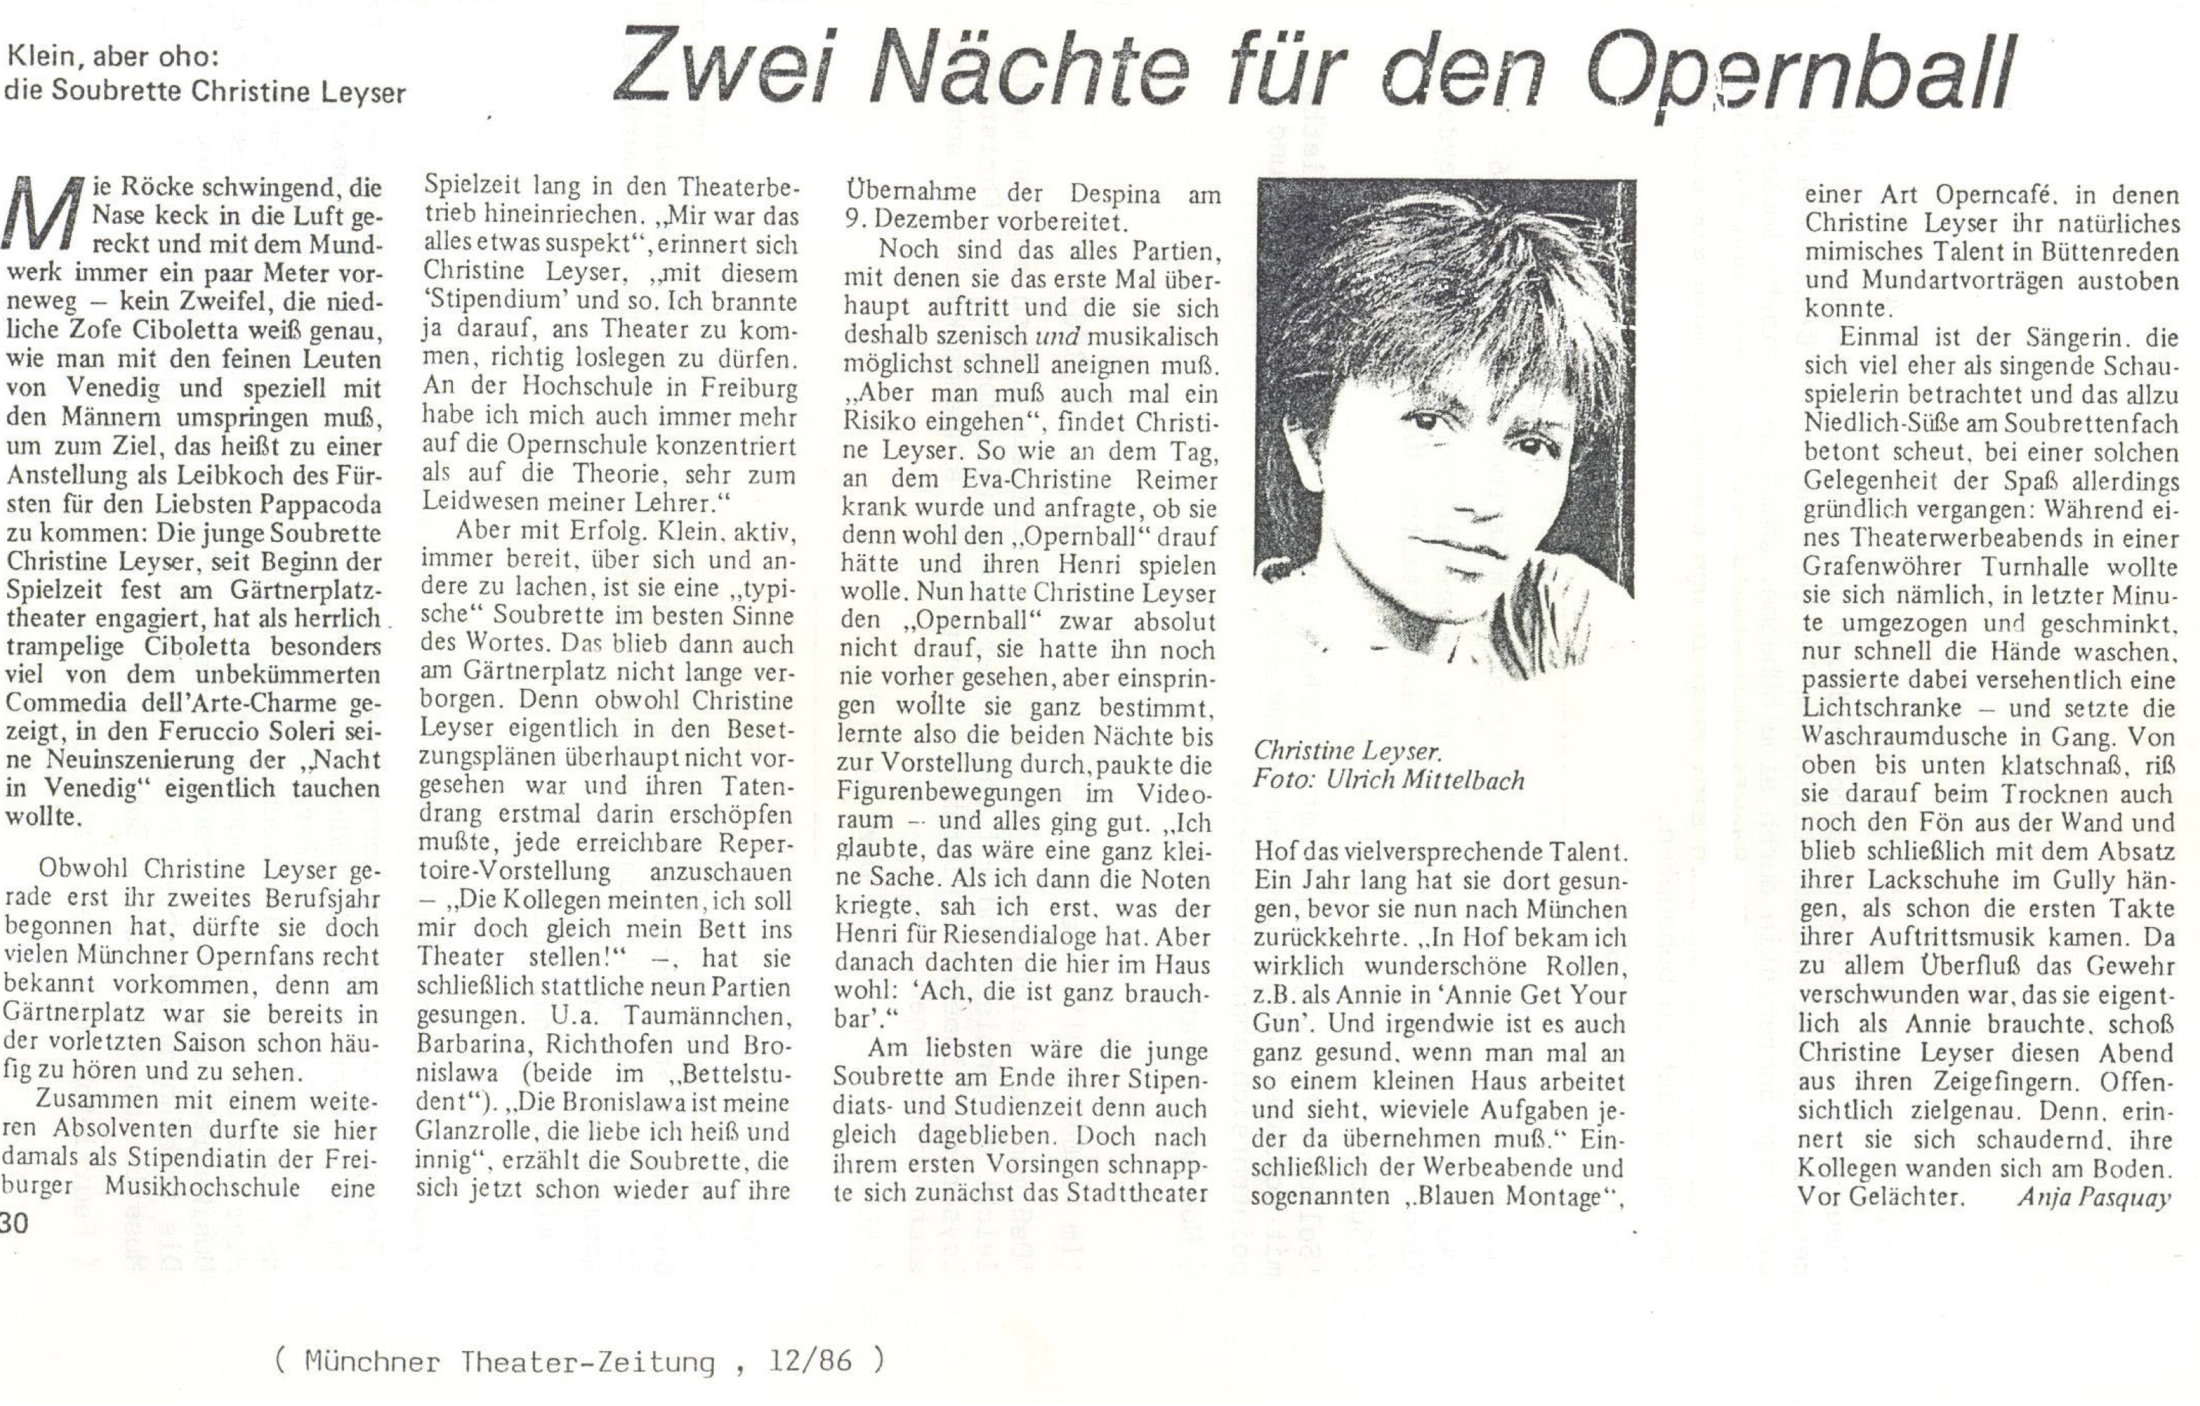 Münchner Theaterzeitung